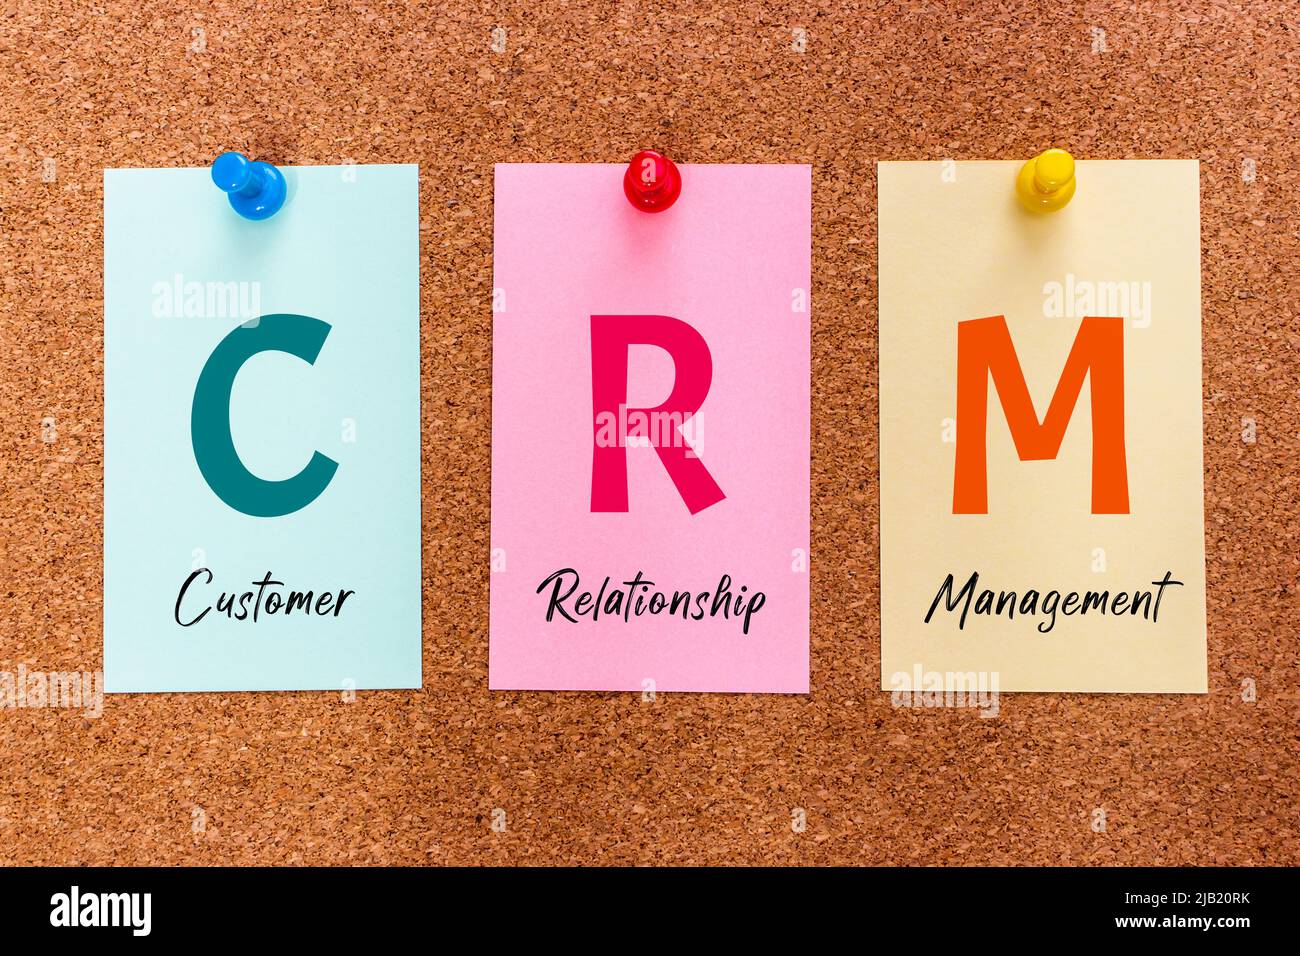 Konzept 3 Buchstaben Schlüsselwort CRM (Customer Relationship Management) auf bunten Aufkleber auf einem Korkbrett befestigt. Stockfoto